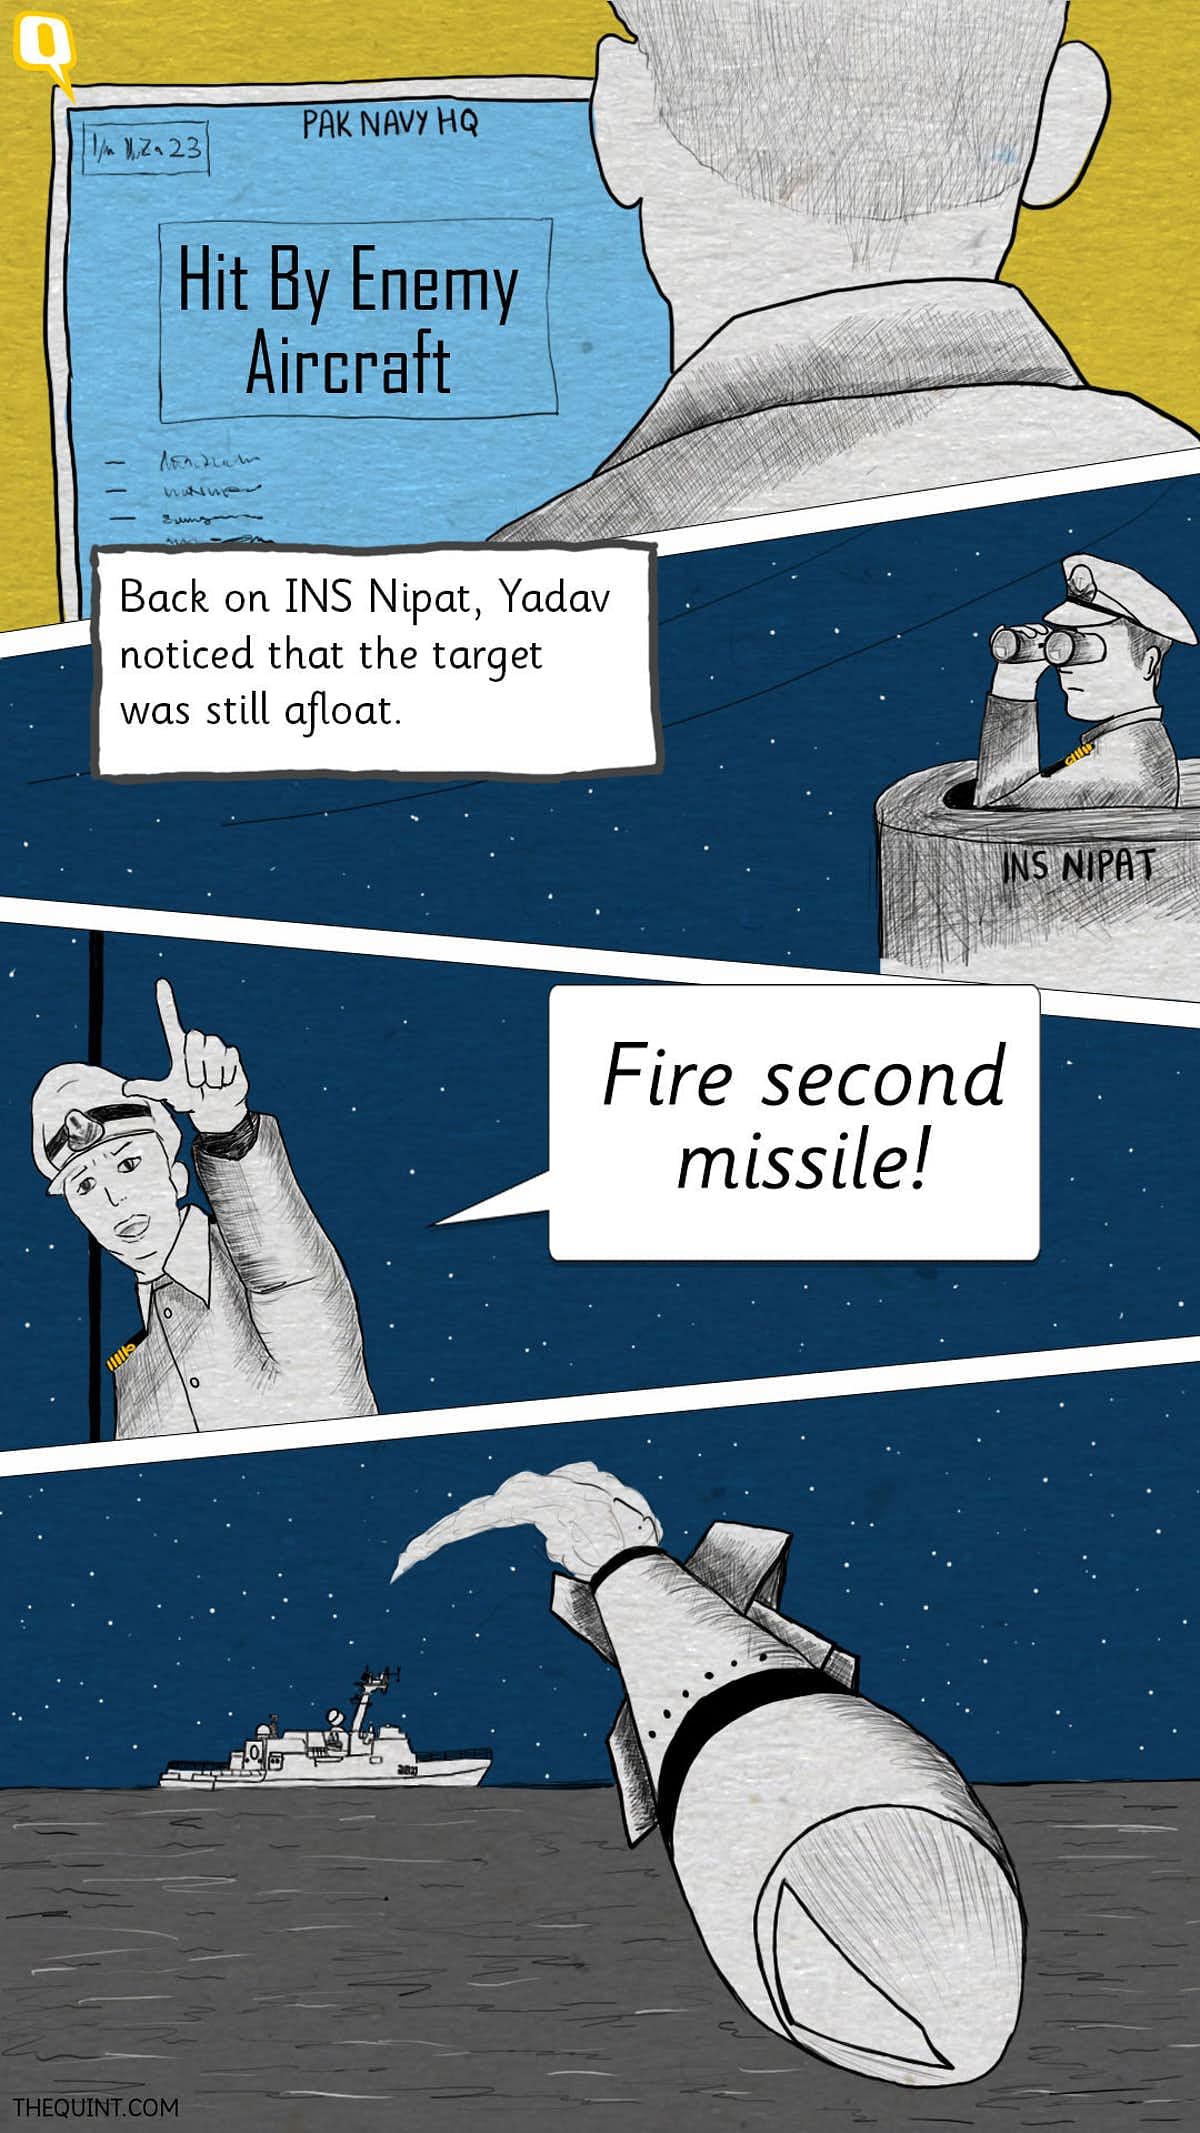 कॉमिक्स में जानिए उस लड़ाई की कहानी जिसमें पाकिस्तानी नेवी की बुरी हार हुई थी.